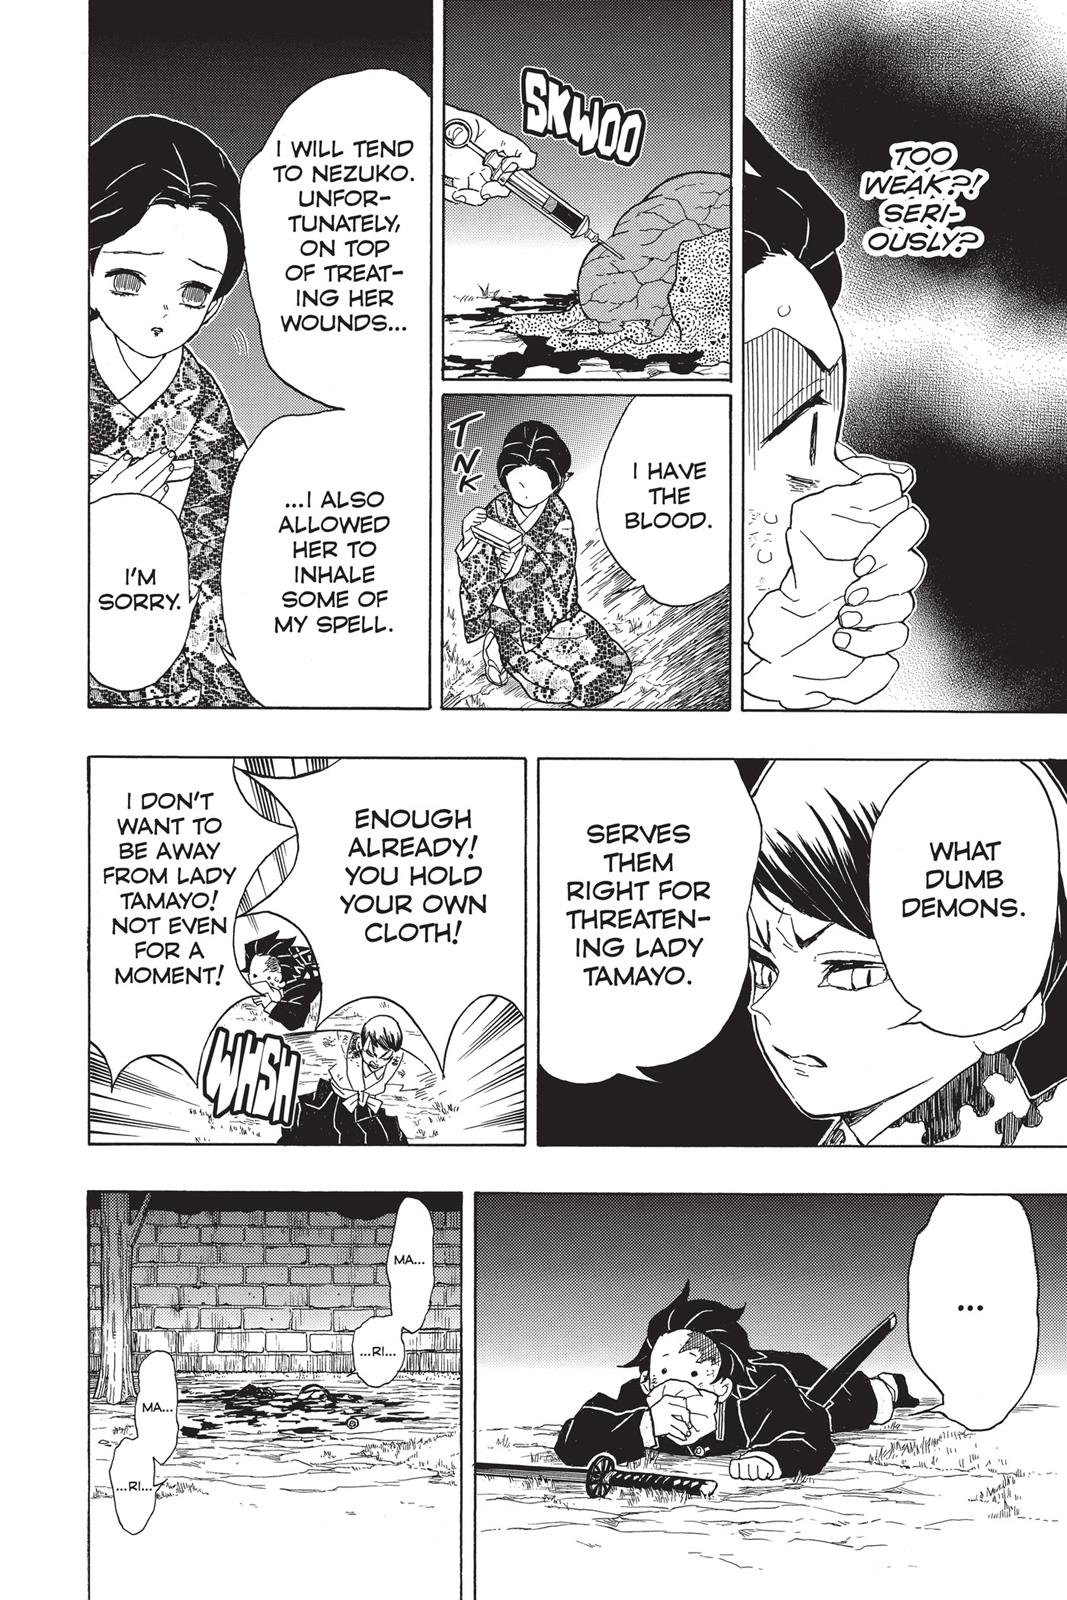 Demon Slayer Manga Manga Chapter - 19 - image 6